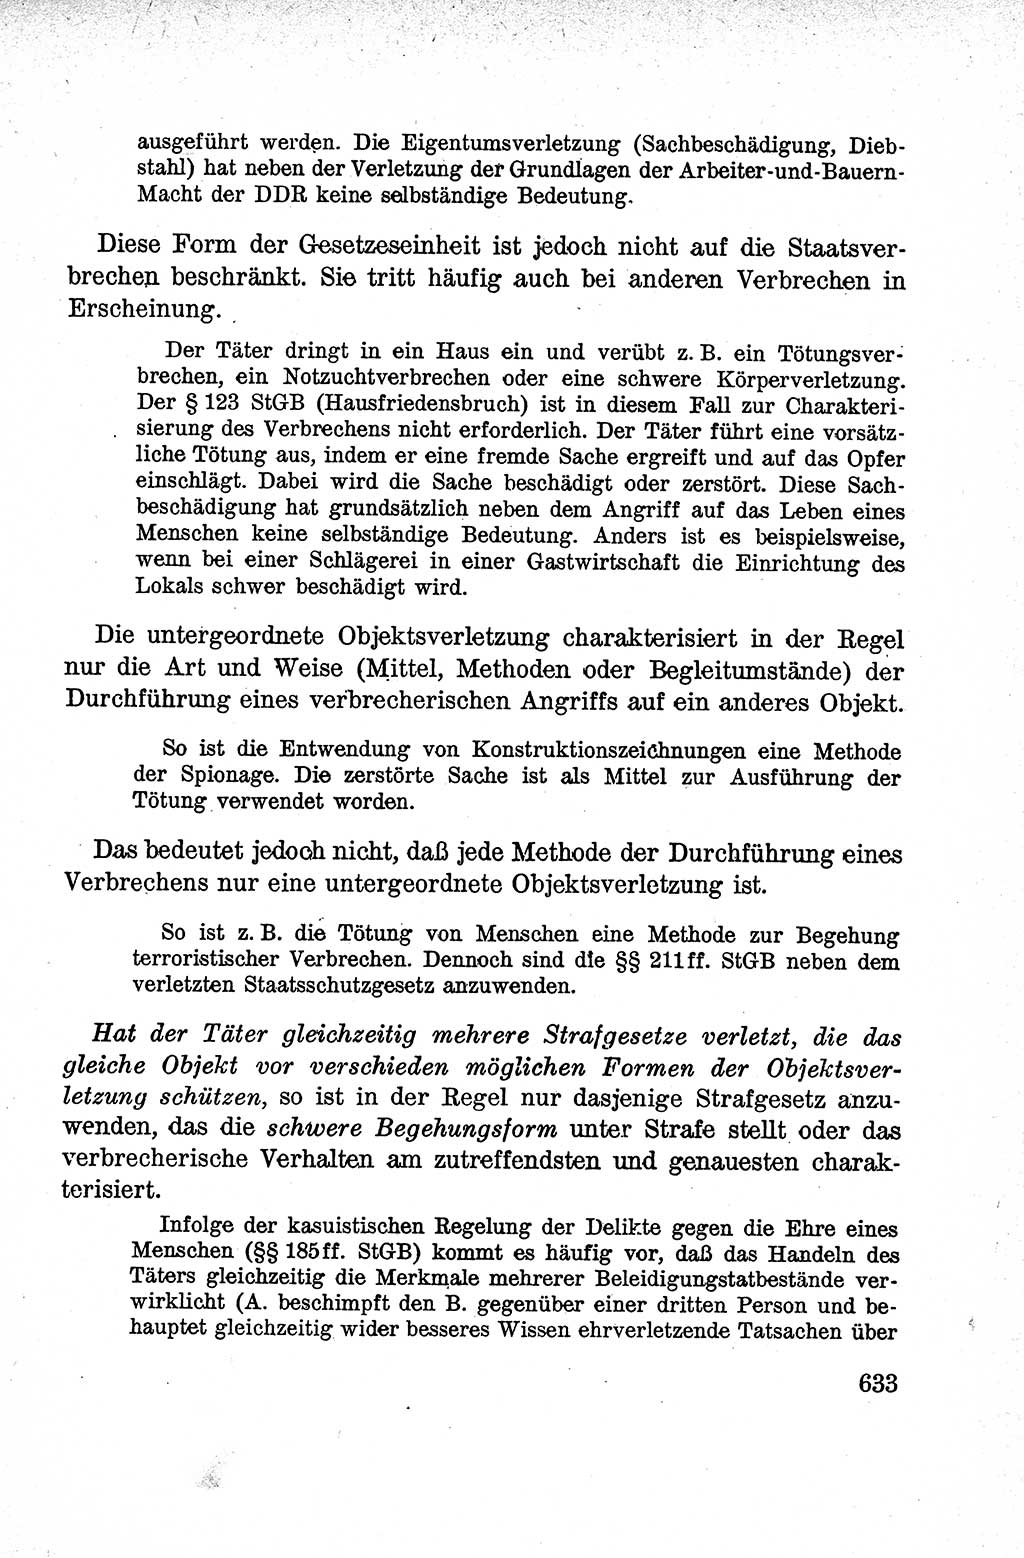 Lehrbuch des Strafrechts der Deutschen Demokratischen Republik (DDR), Allgemeiner Teil 1959, Seite 633 (Lb. Strafr. DDR AT 1959, S. 633)